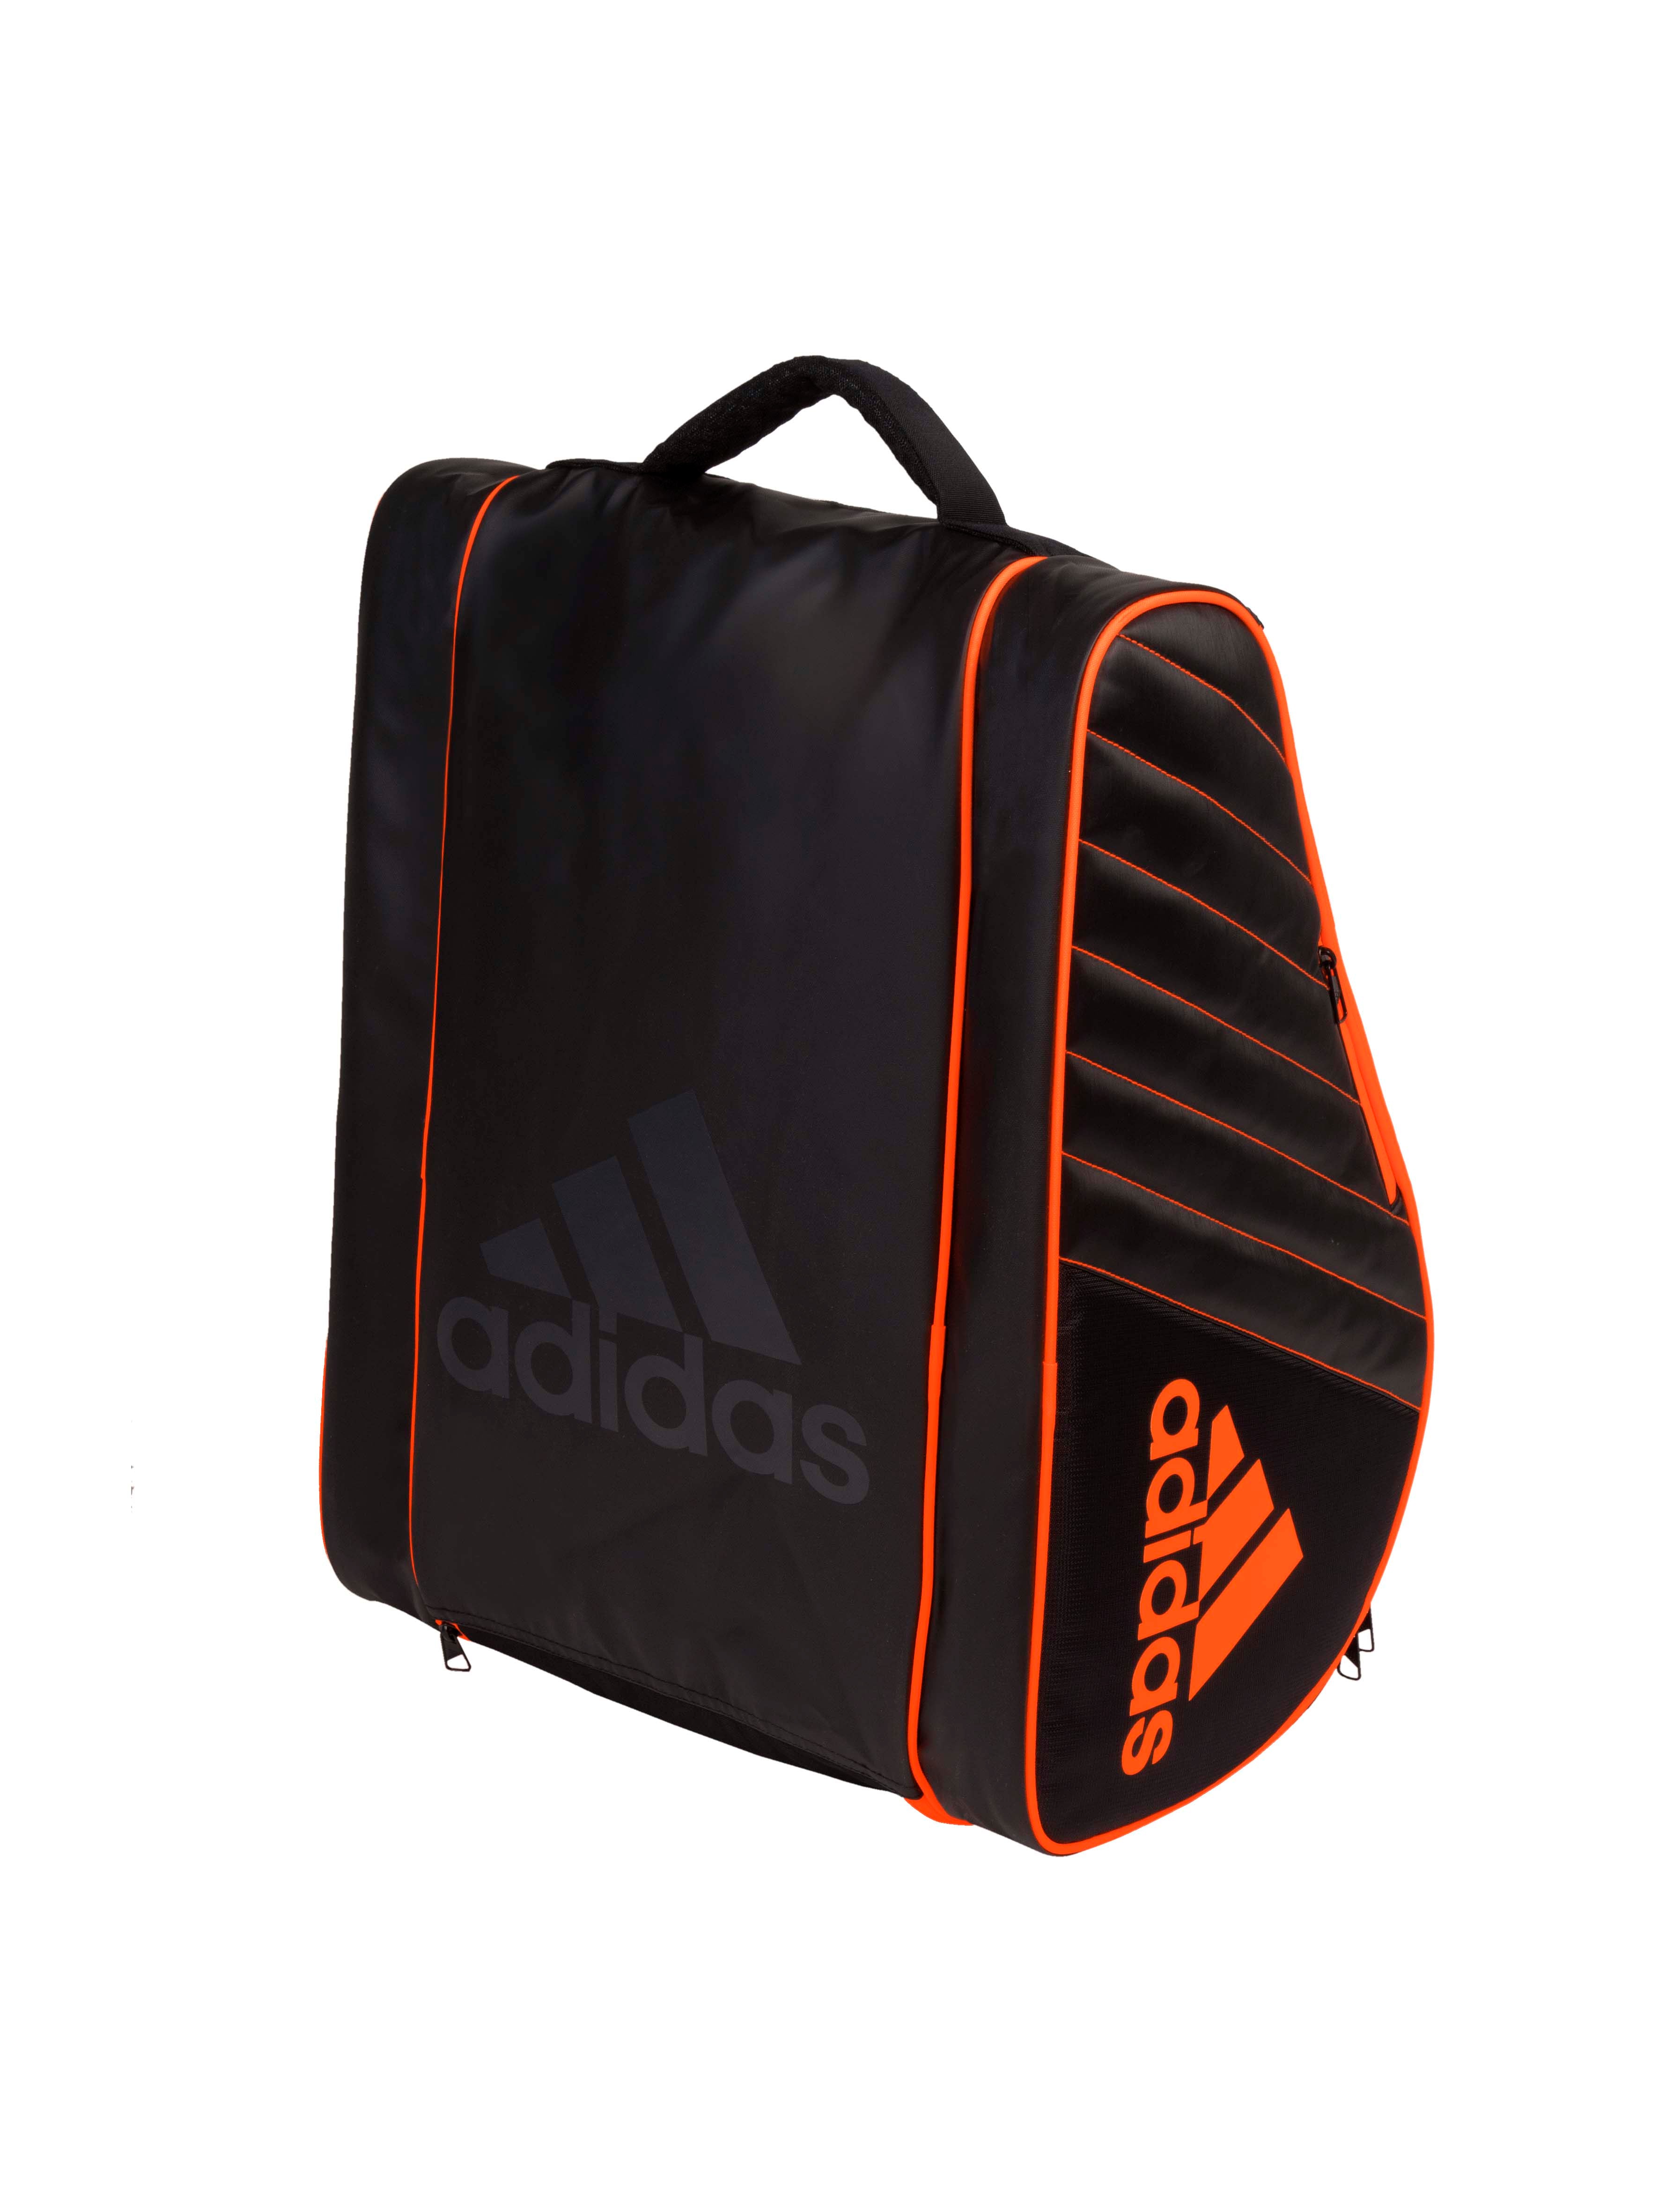 Adidas Pro Tour Padel Bag (Black/Orange)